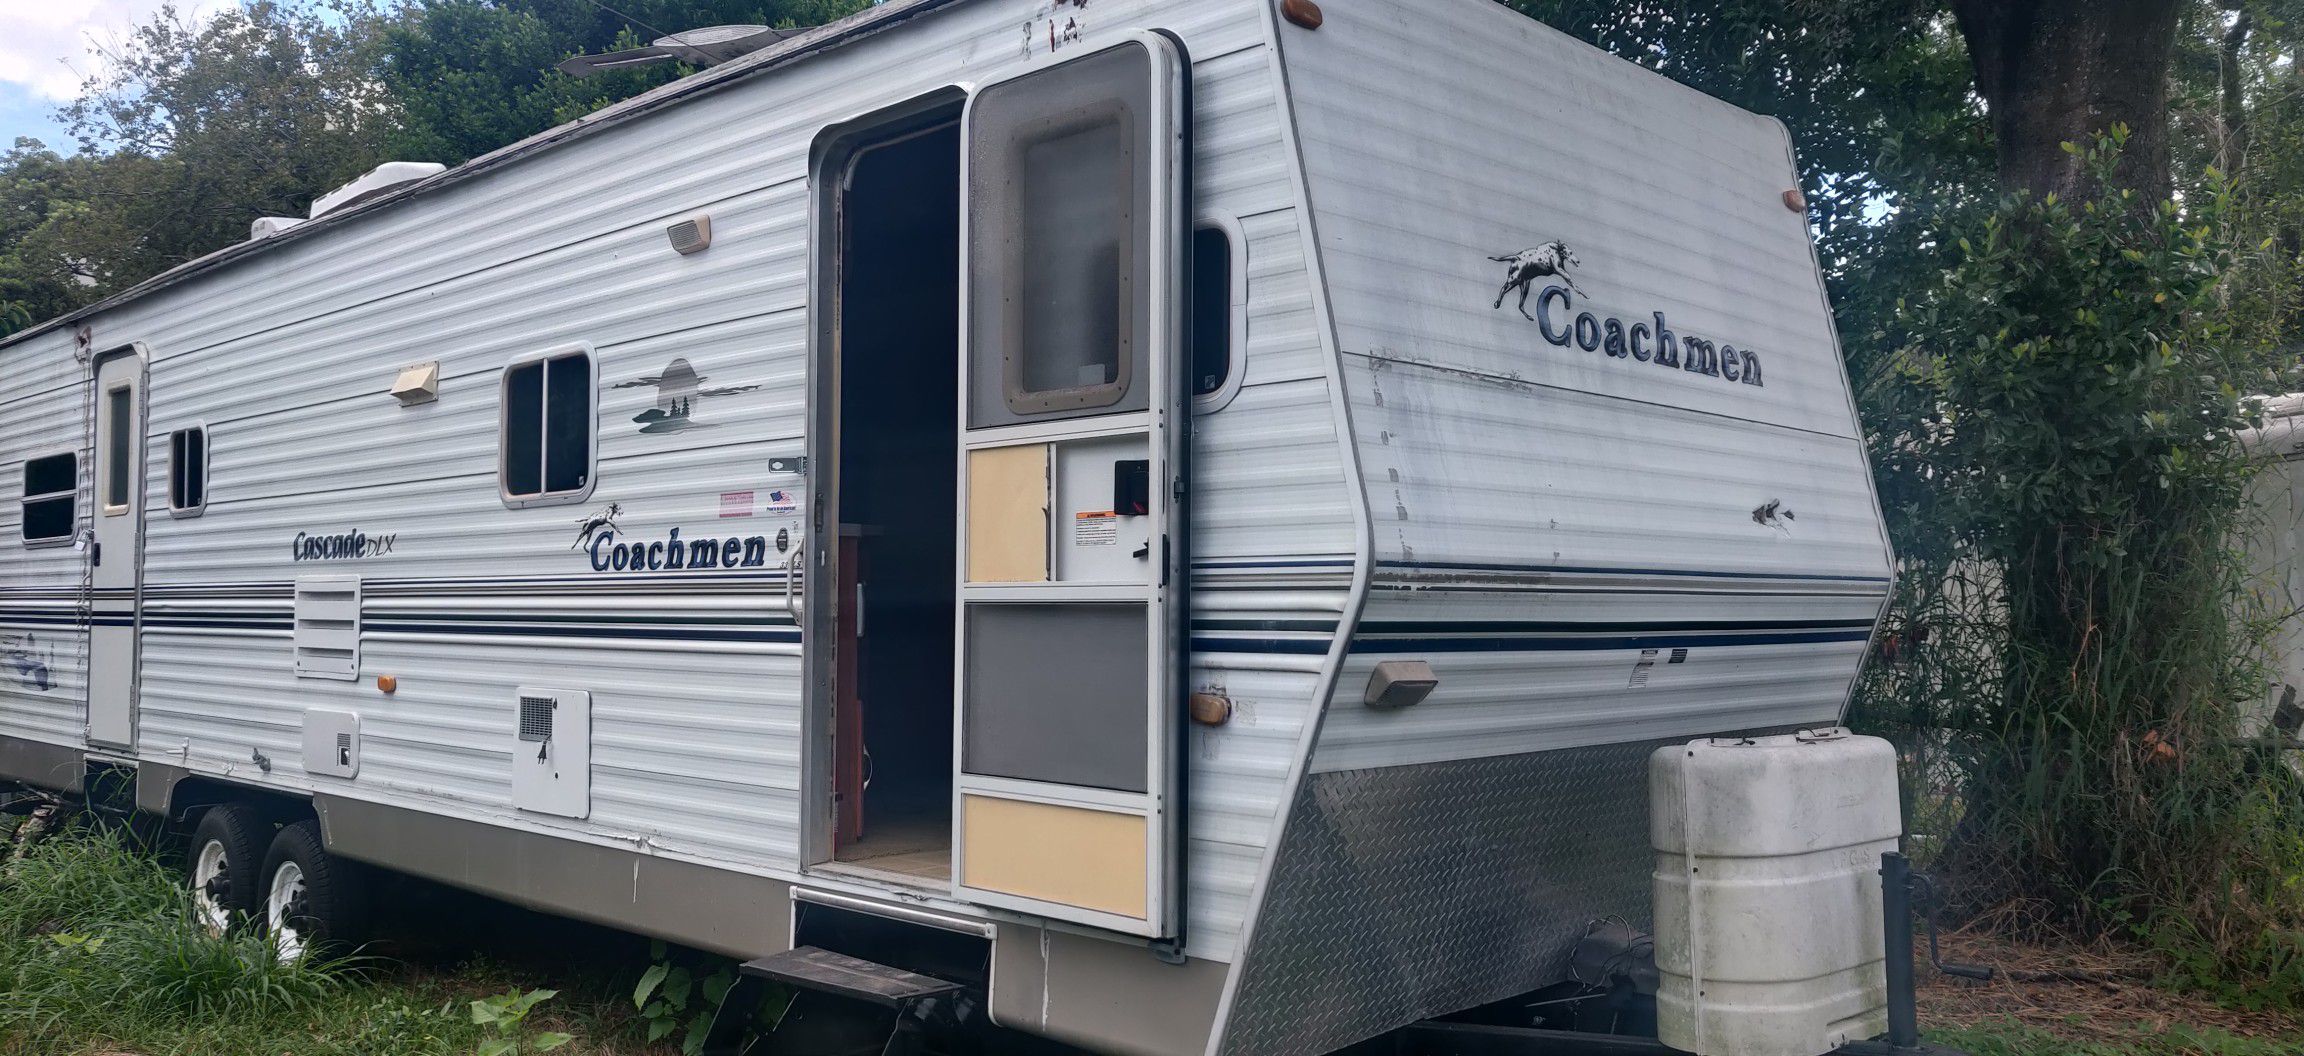 2004 Coachmen Cascade Camper trailer